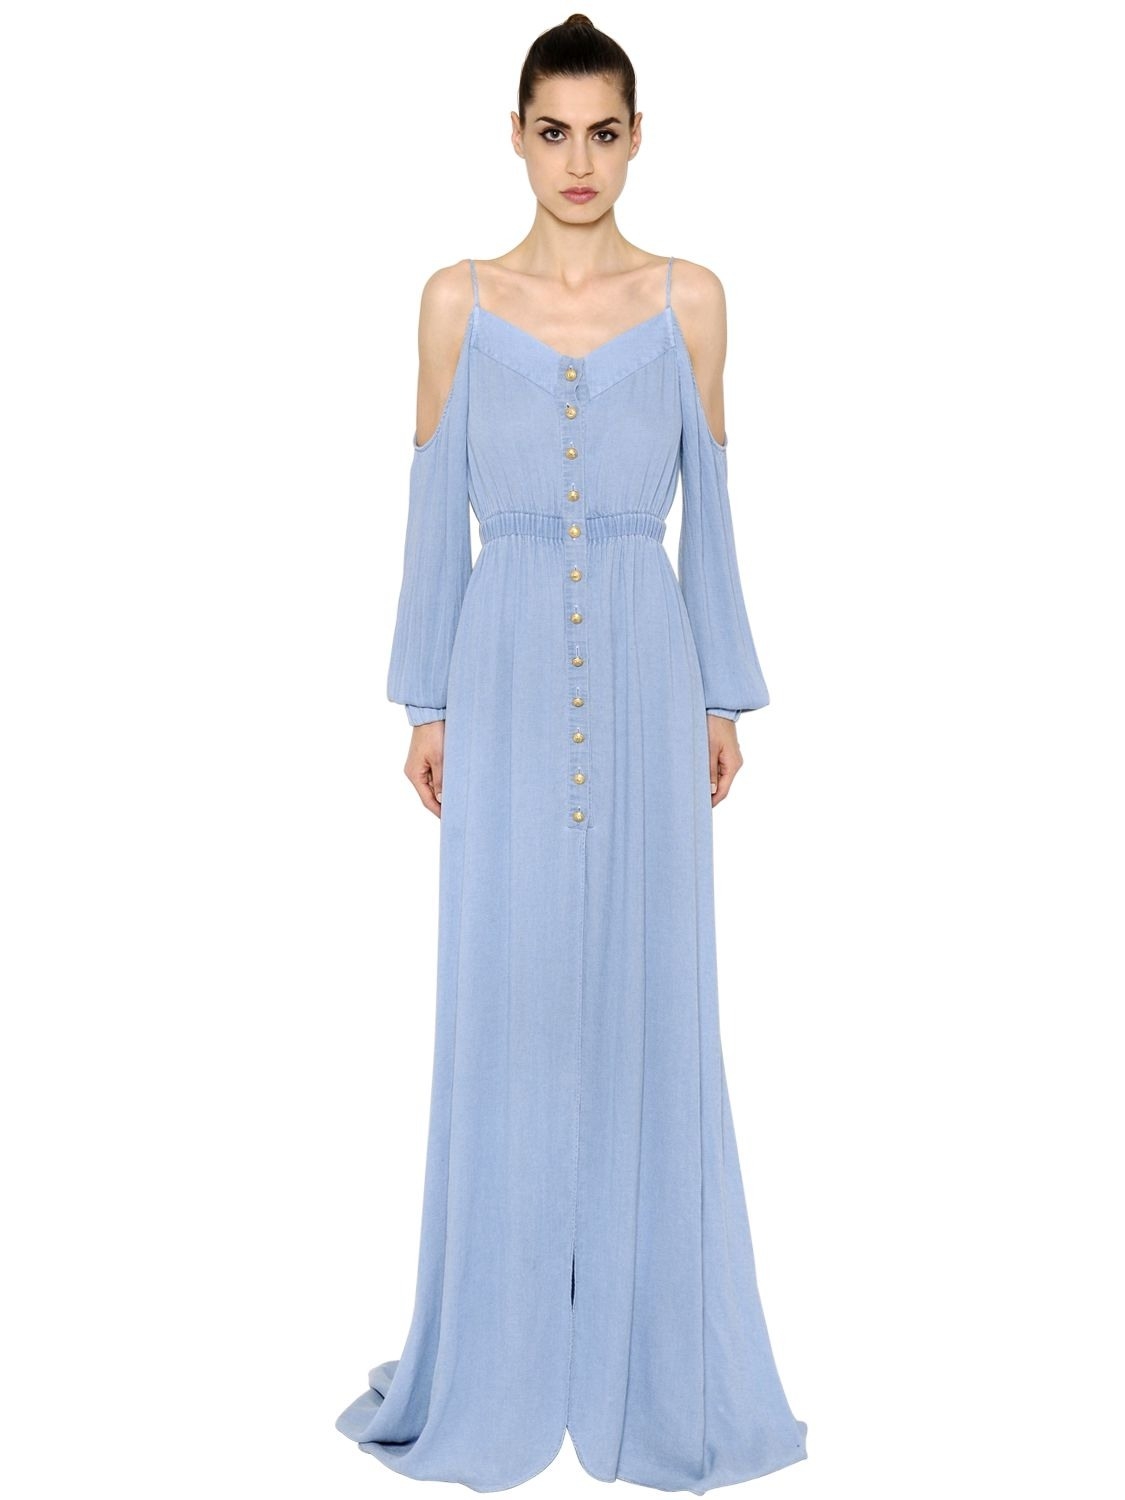 Formal Fantastisch Langes Kleid Hellblau Stylish13 Luxurius Langes Kleid Hellblau Ärmel